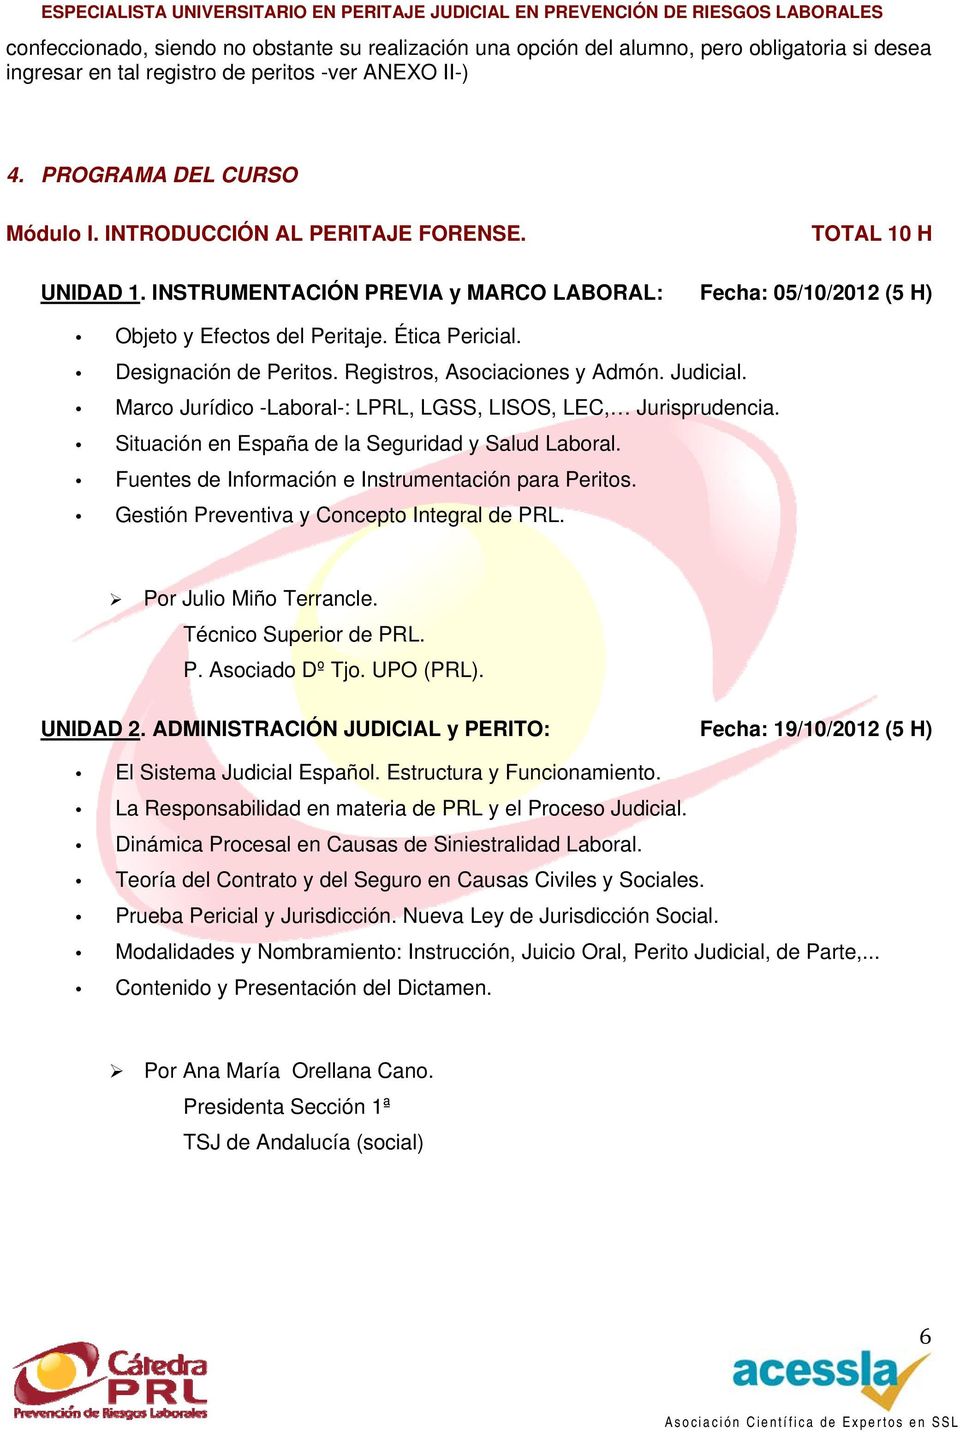 Registros, Asociaciones y Admón. Judicial. Marco Jurídico -Laboral-: LPRL, LGSS, LISOS, LEC, Jurisprudencia. Situación en España de la Seguridad y Salud Laboral.